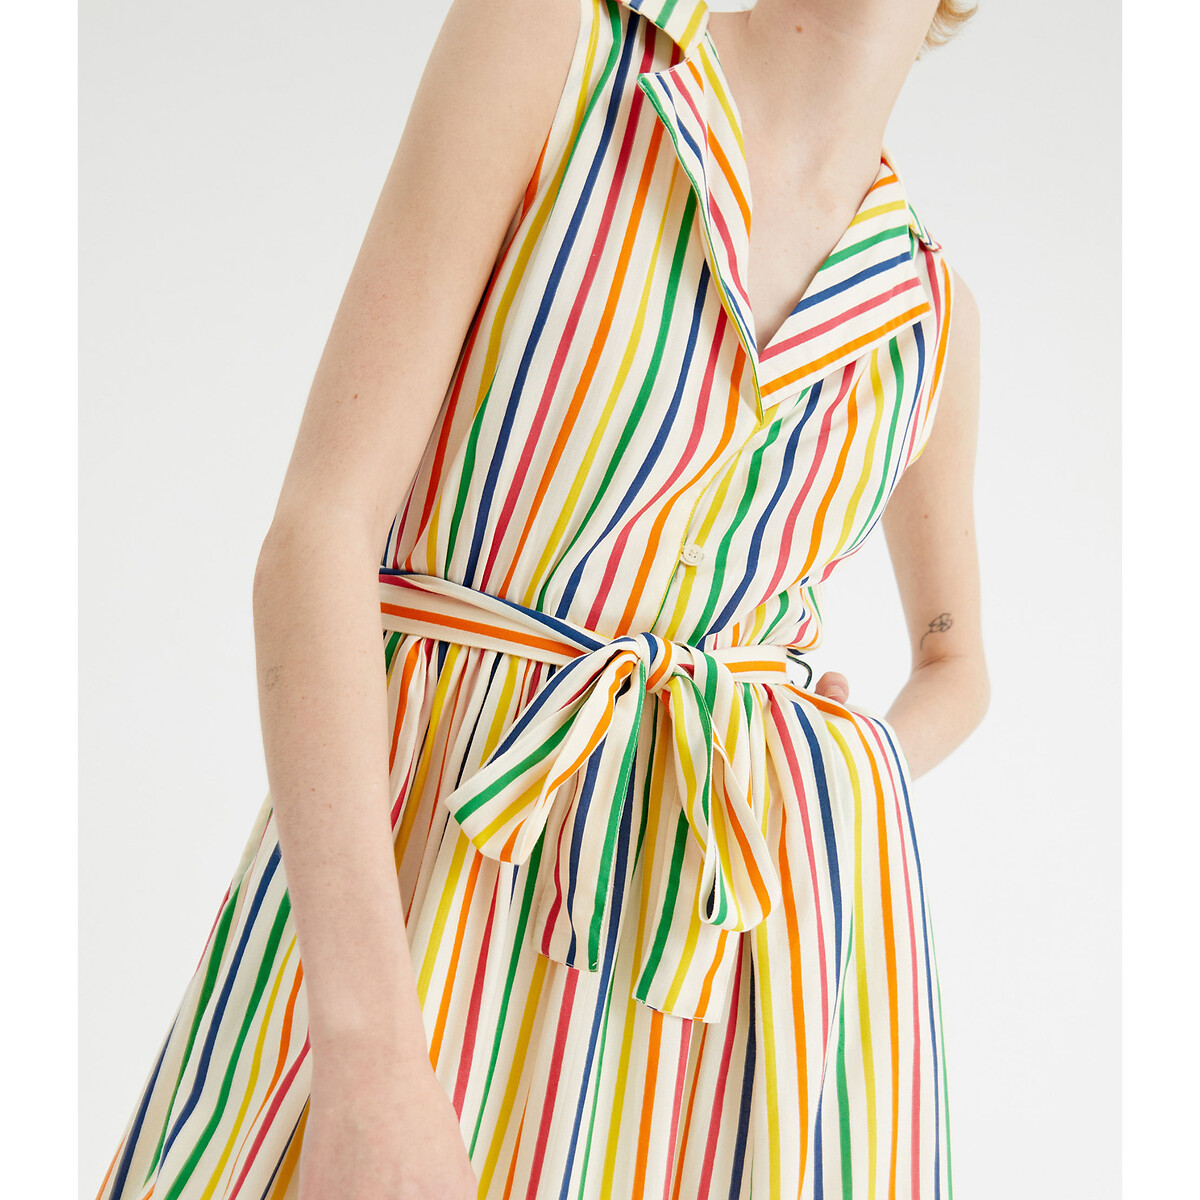 Платье-миди Без рукавов в разноцветную полоску XL разноцветный LaRedoute, размер XL - фото 2